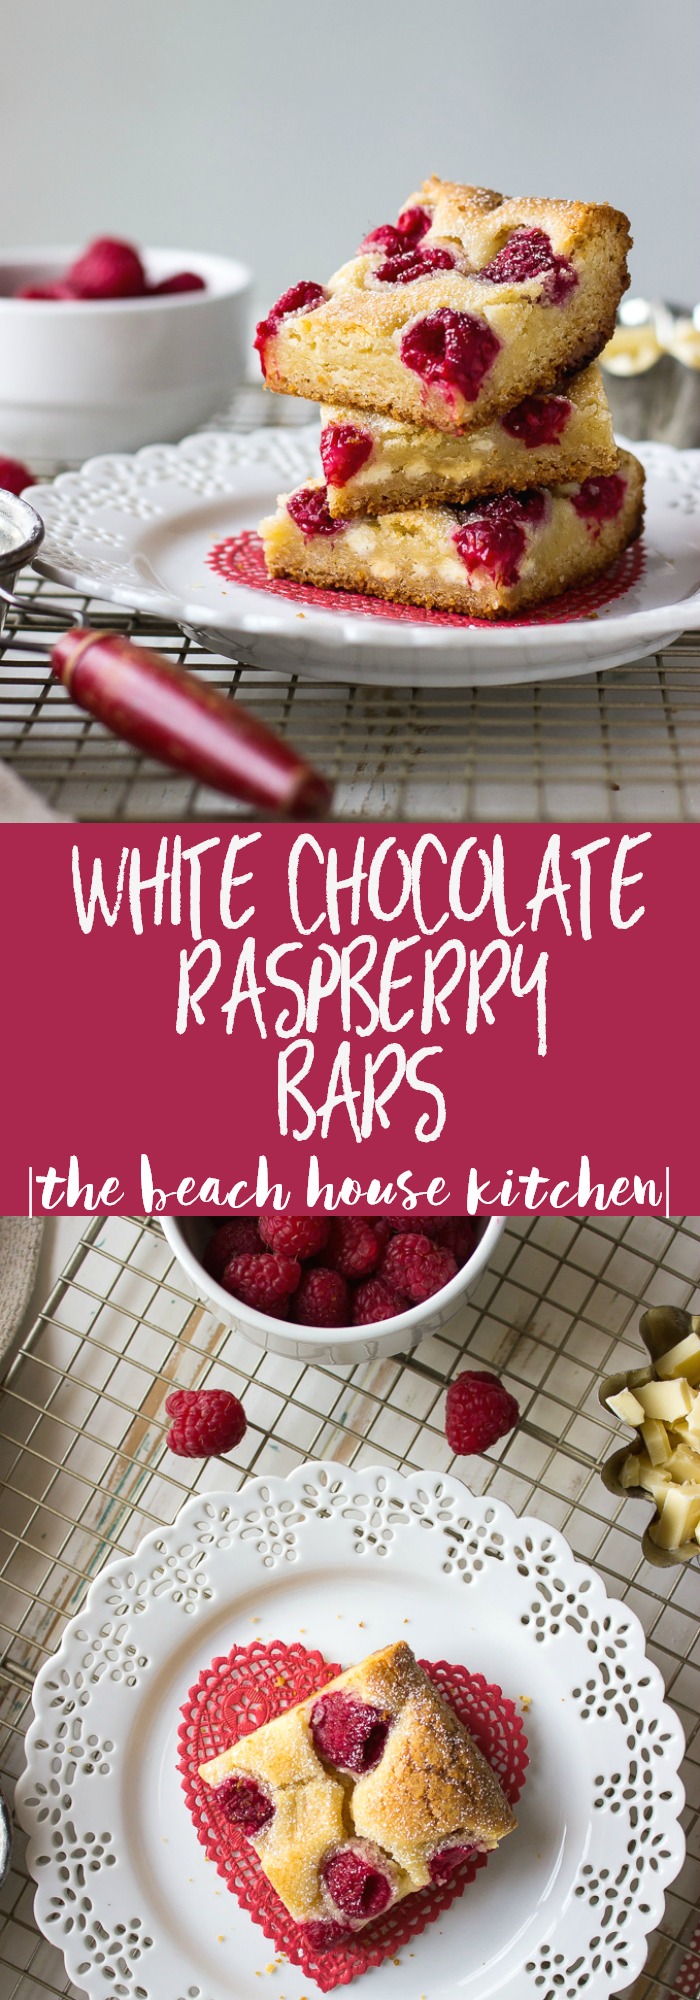 White Chocolate Raspberry Bars